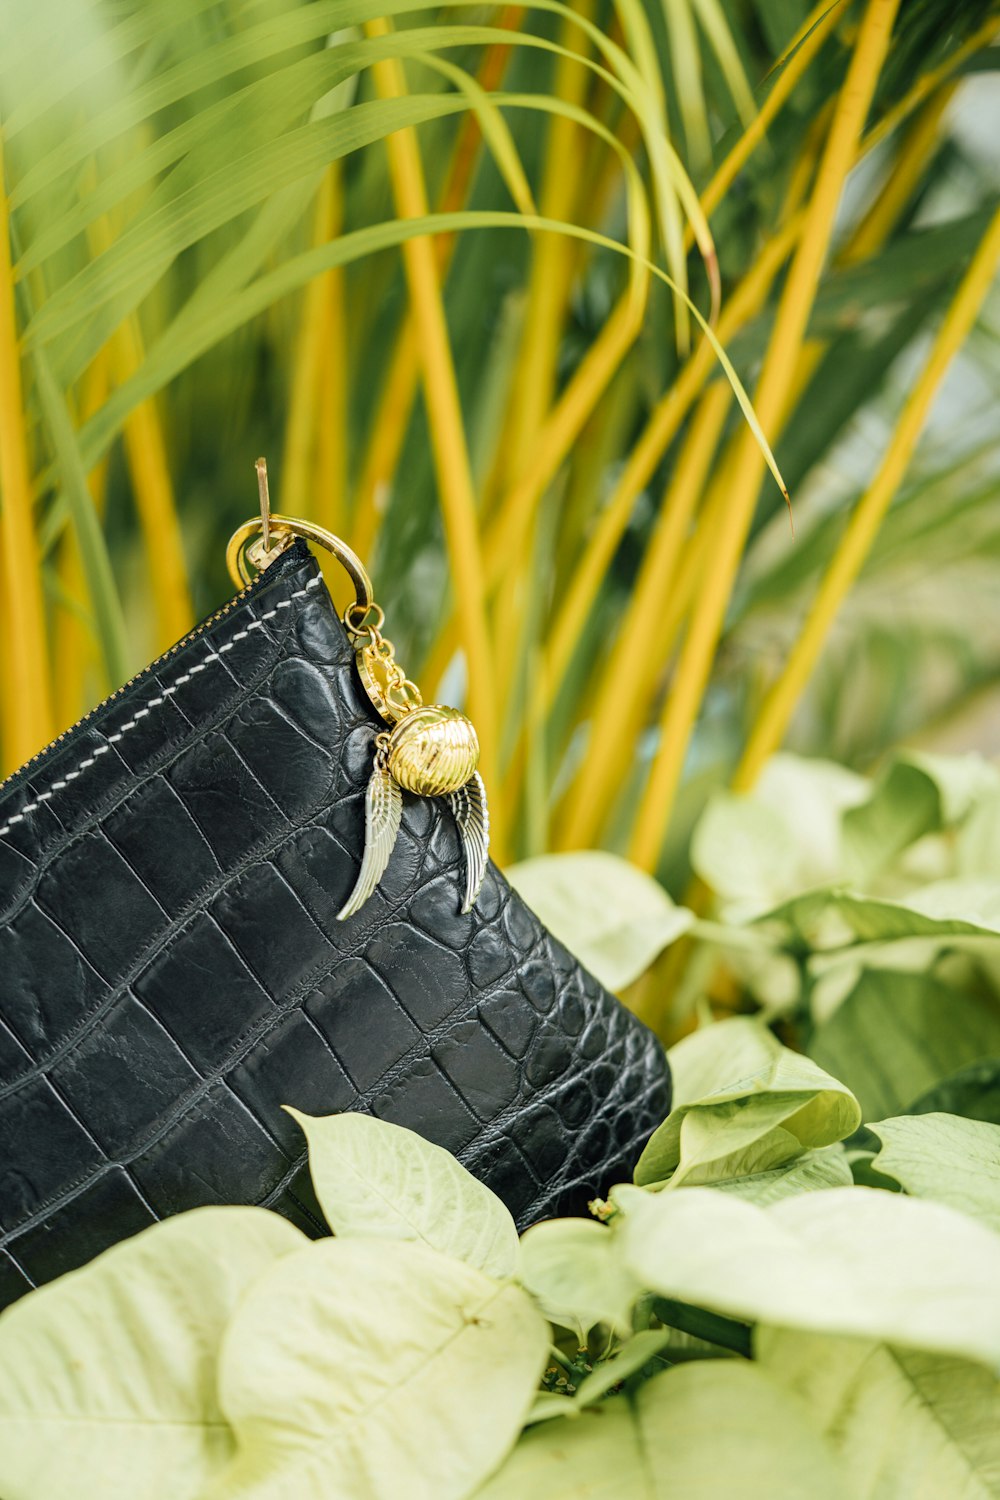 무성한 녹색 식물 위에 앉아있는 검은 지갑